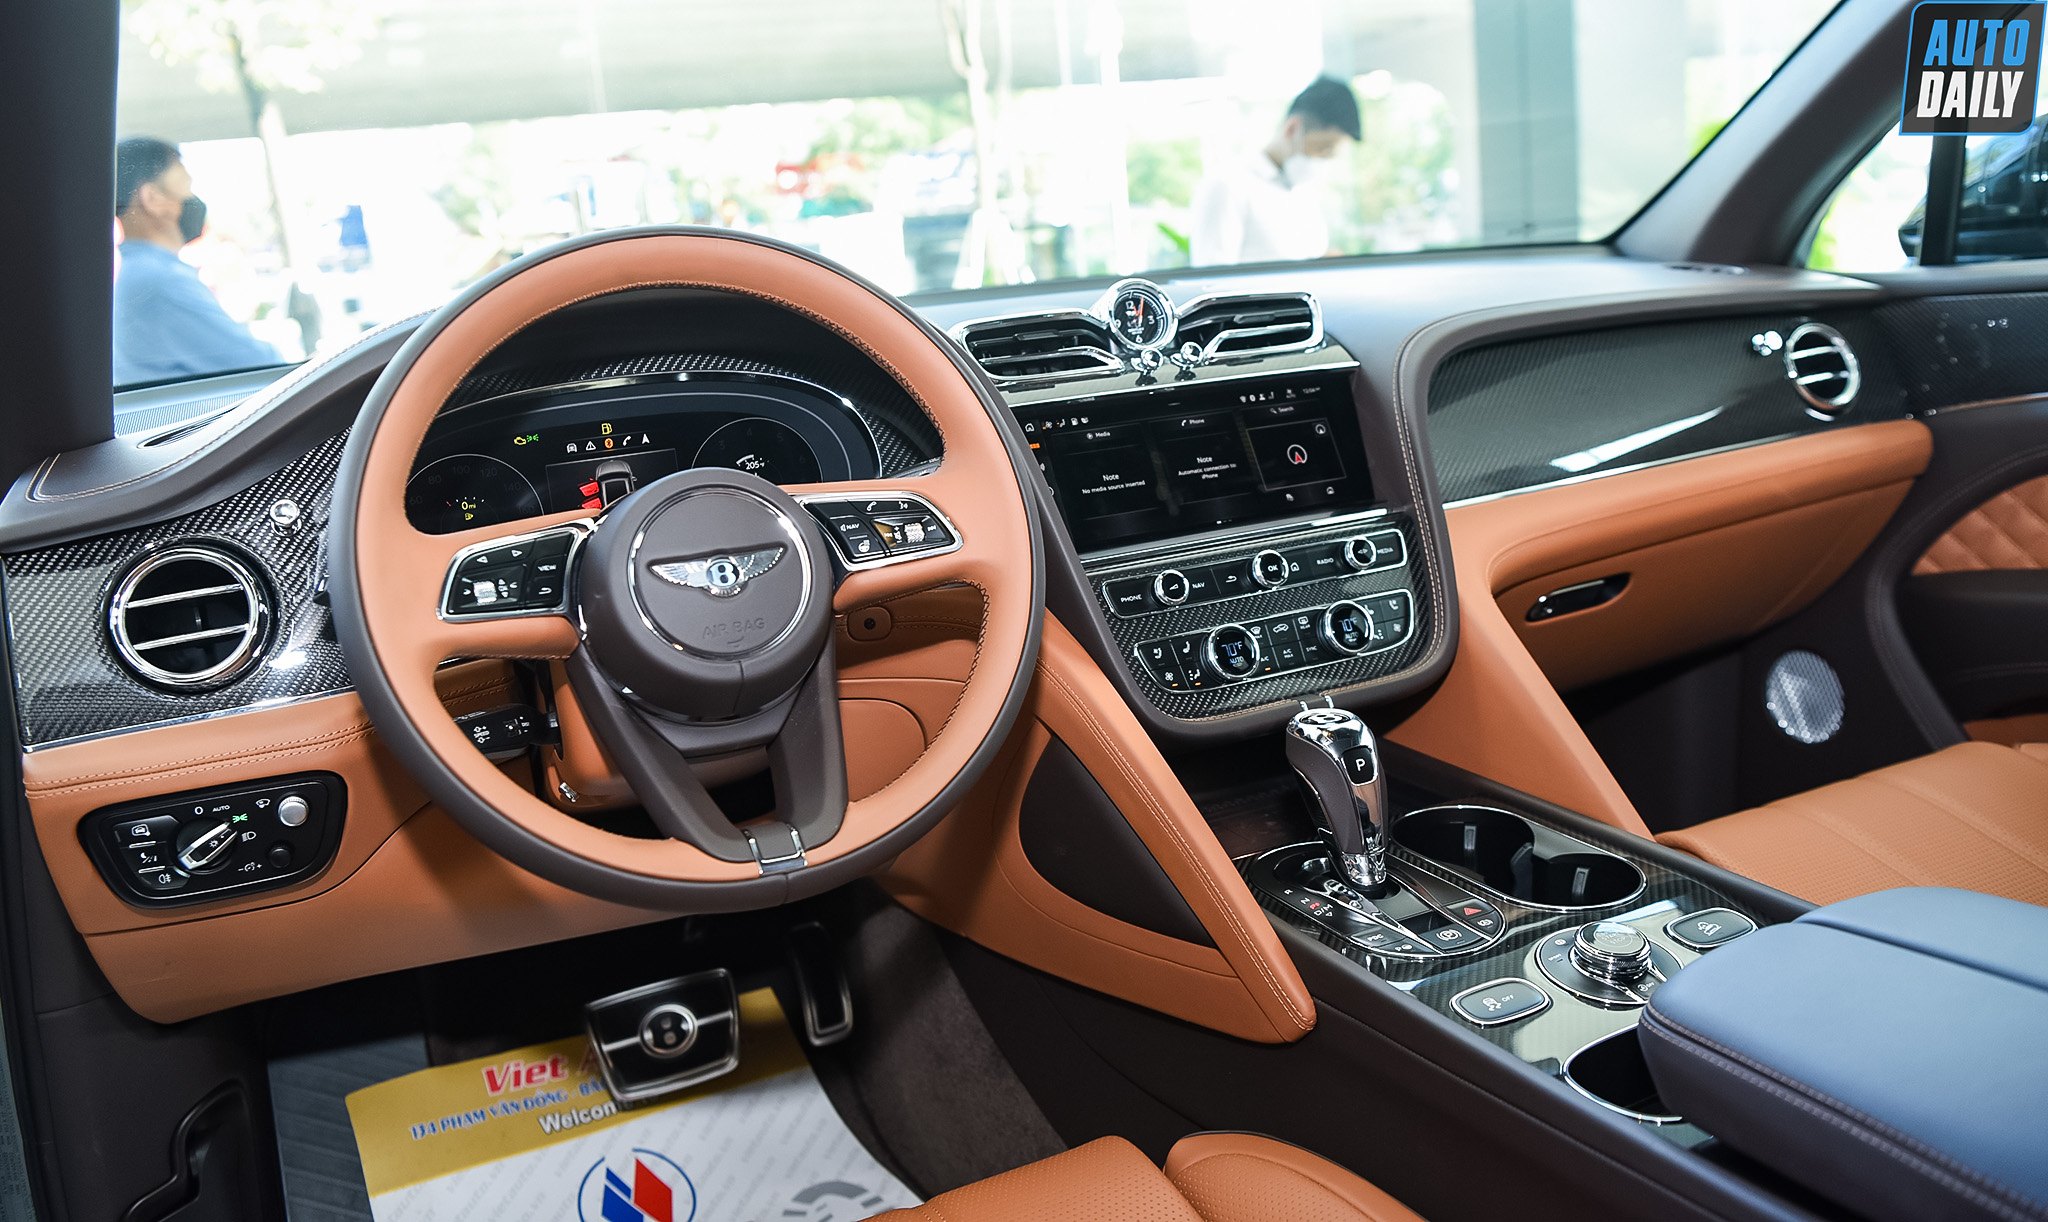 Chi tiết Bentley Bentayga 2021 nội thất trang trí Carbon giá hơn 18 tỷ adt-6641-copy.jpg